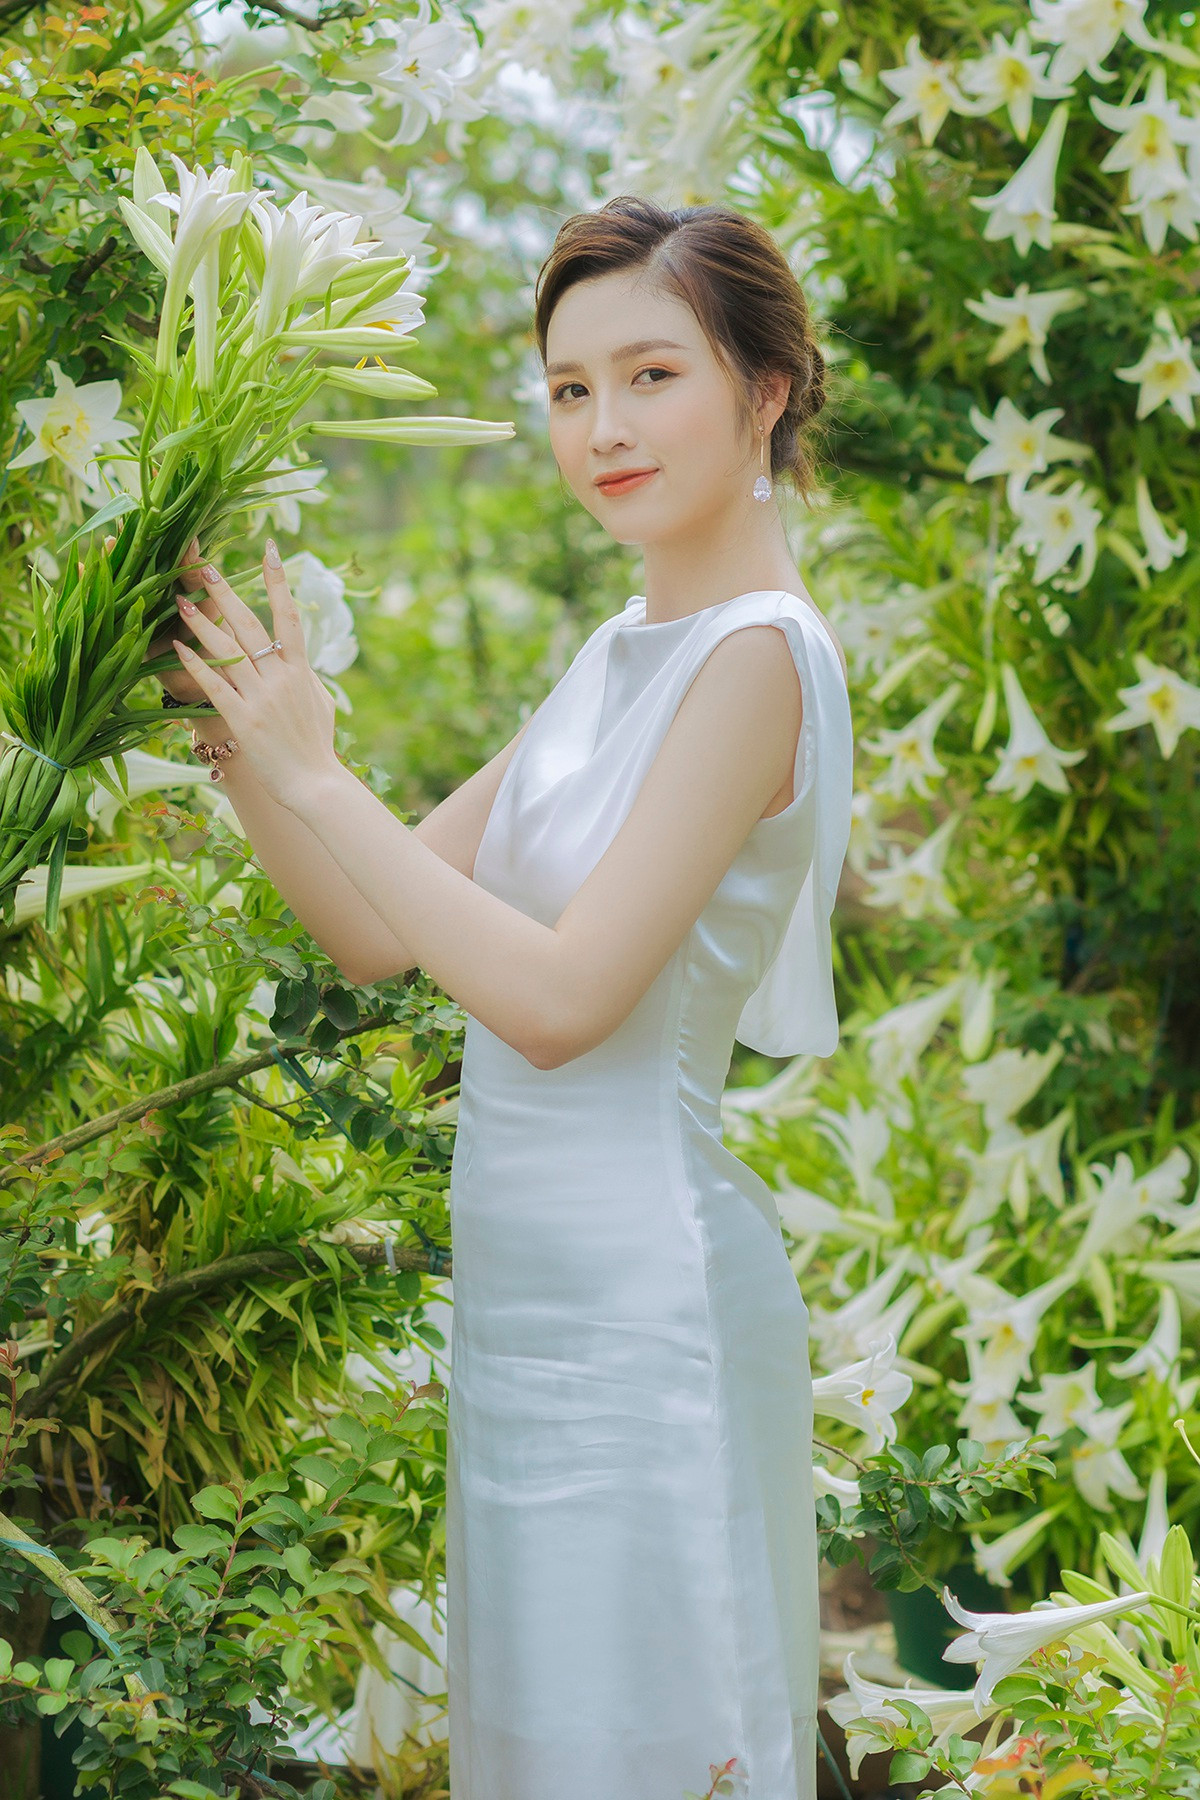 Hoa khôi ĐH Quốc gia Hà Nội khoe lưng trắng ngần giữa vườn loa kèn mùa hạ - 2